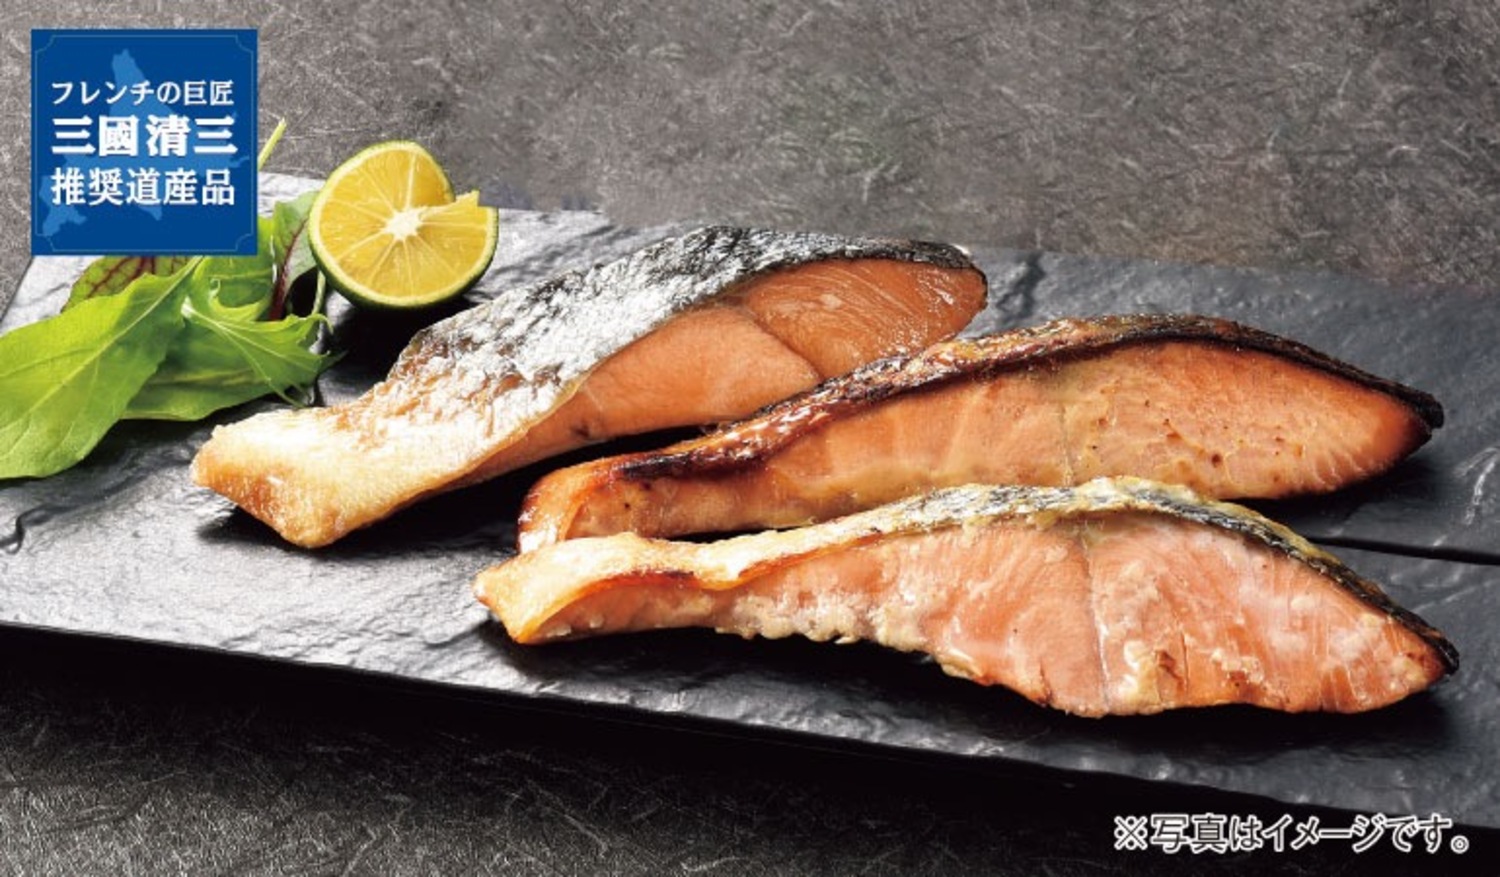 三國シェフ推奨 漁吉丸の銀聖焼魚ギフト 送料無料